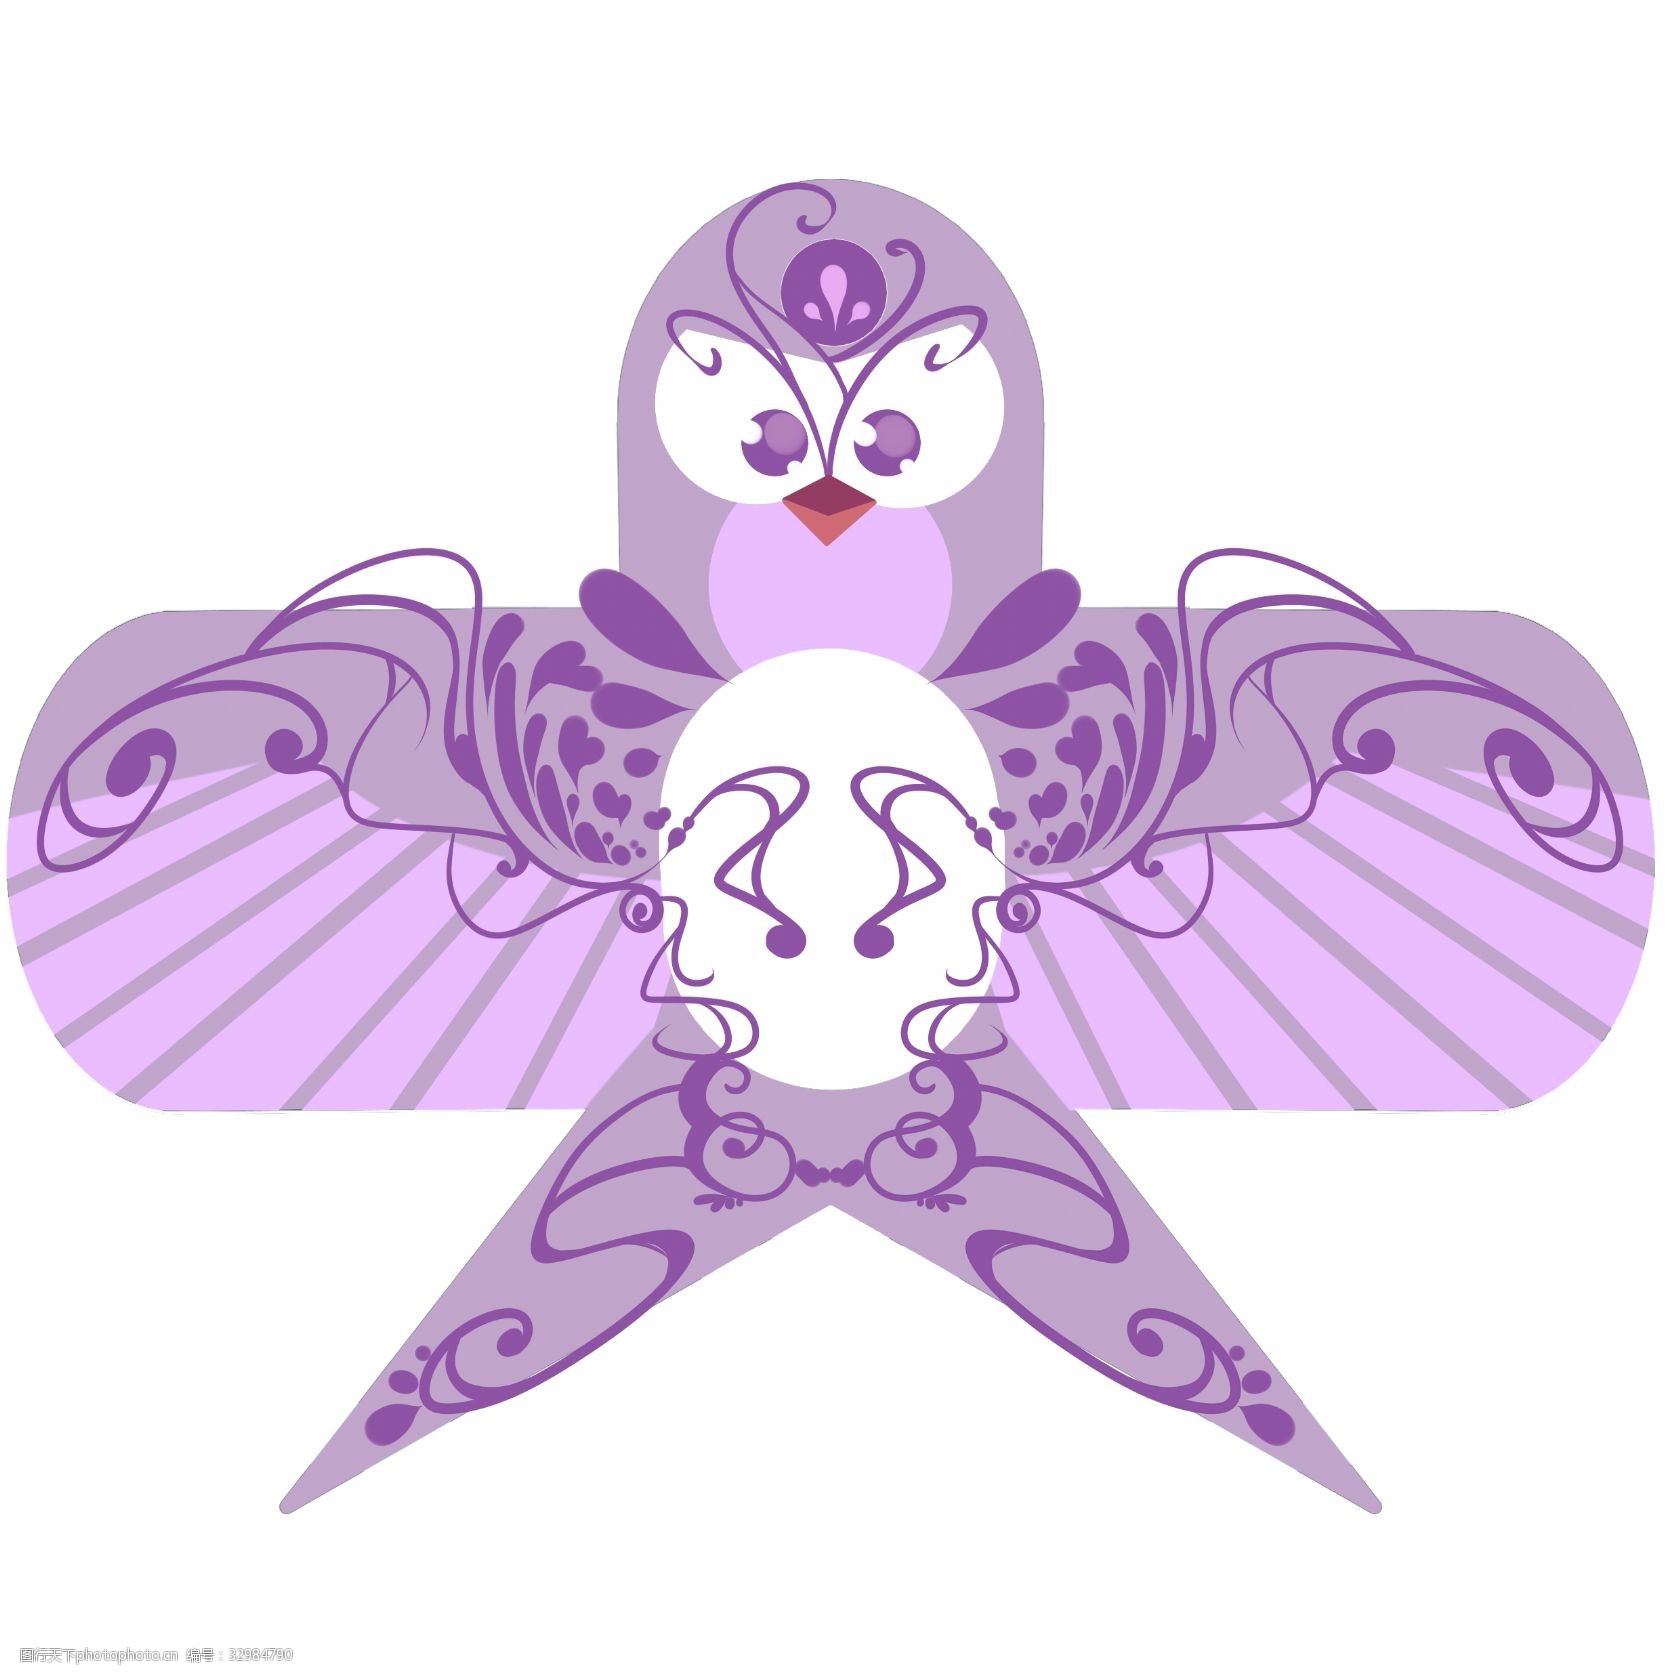 紫色风筝玩具插画